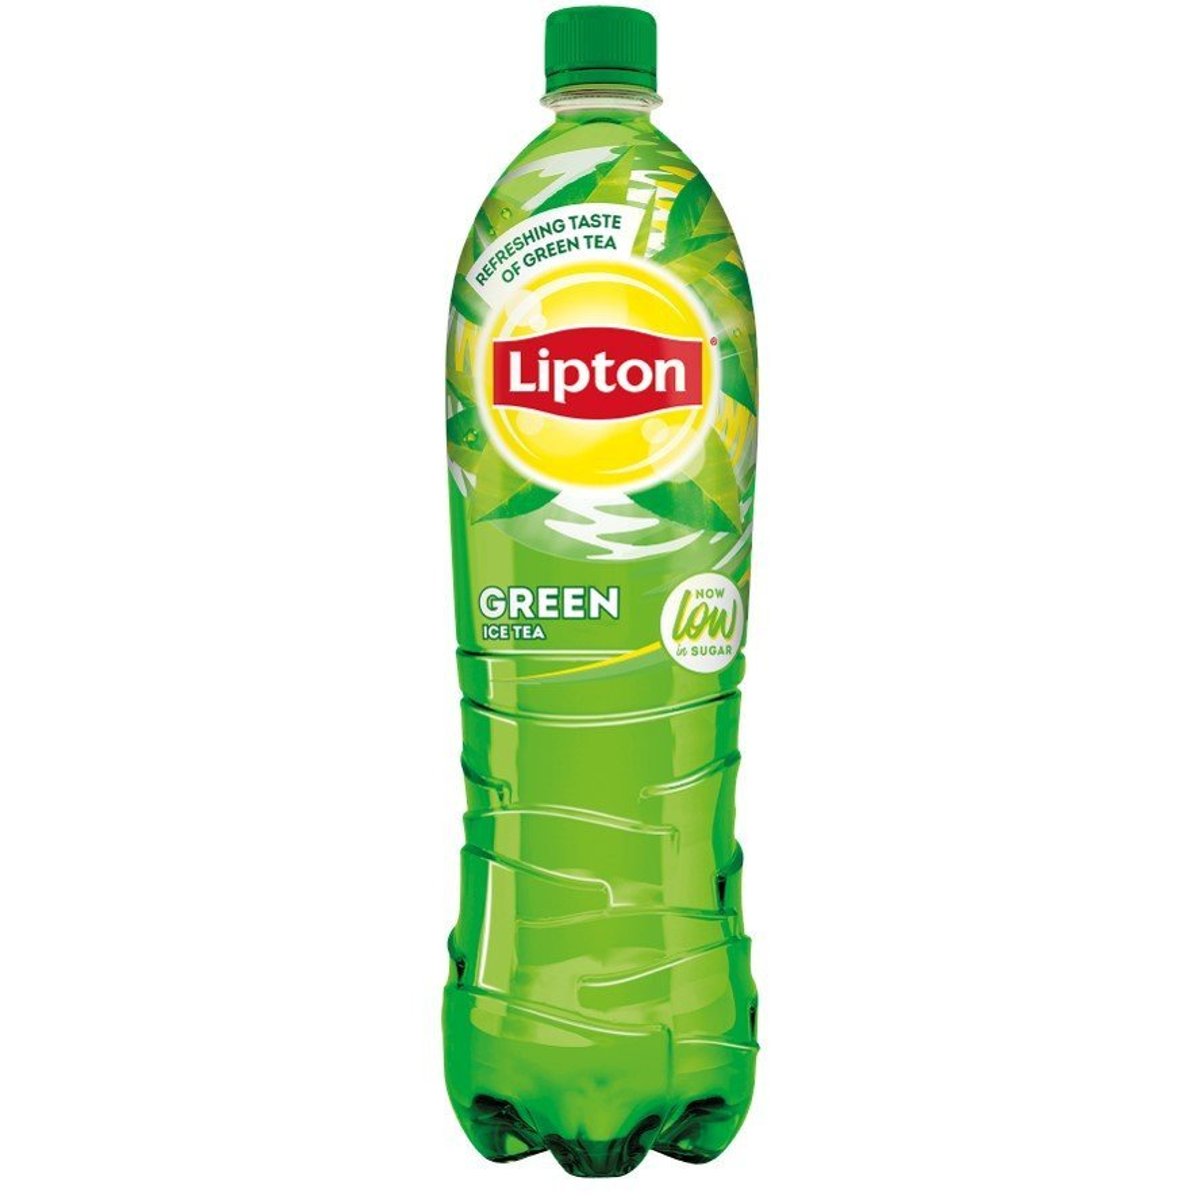 Lipton Green Ice Tea